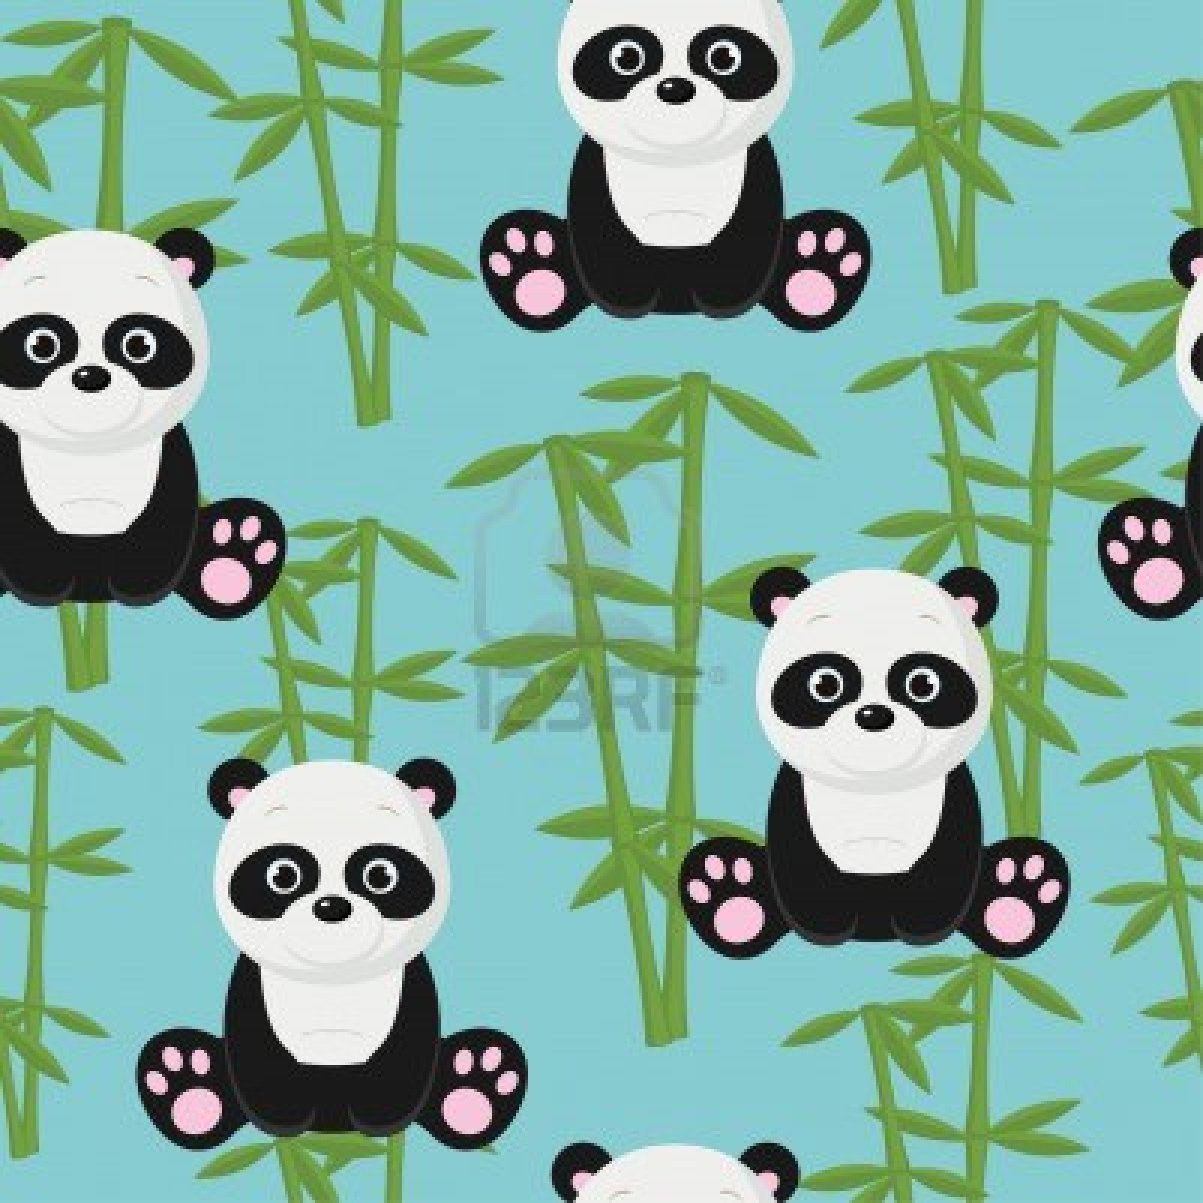 Gambar Kartun Panda Lucu Banget